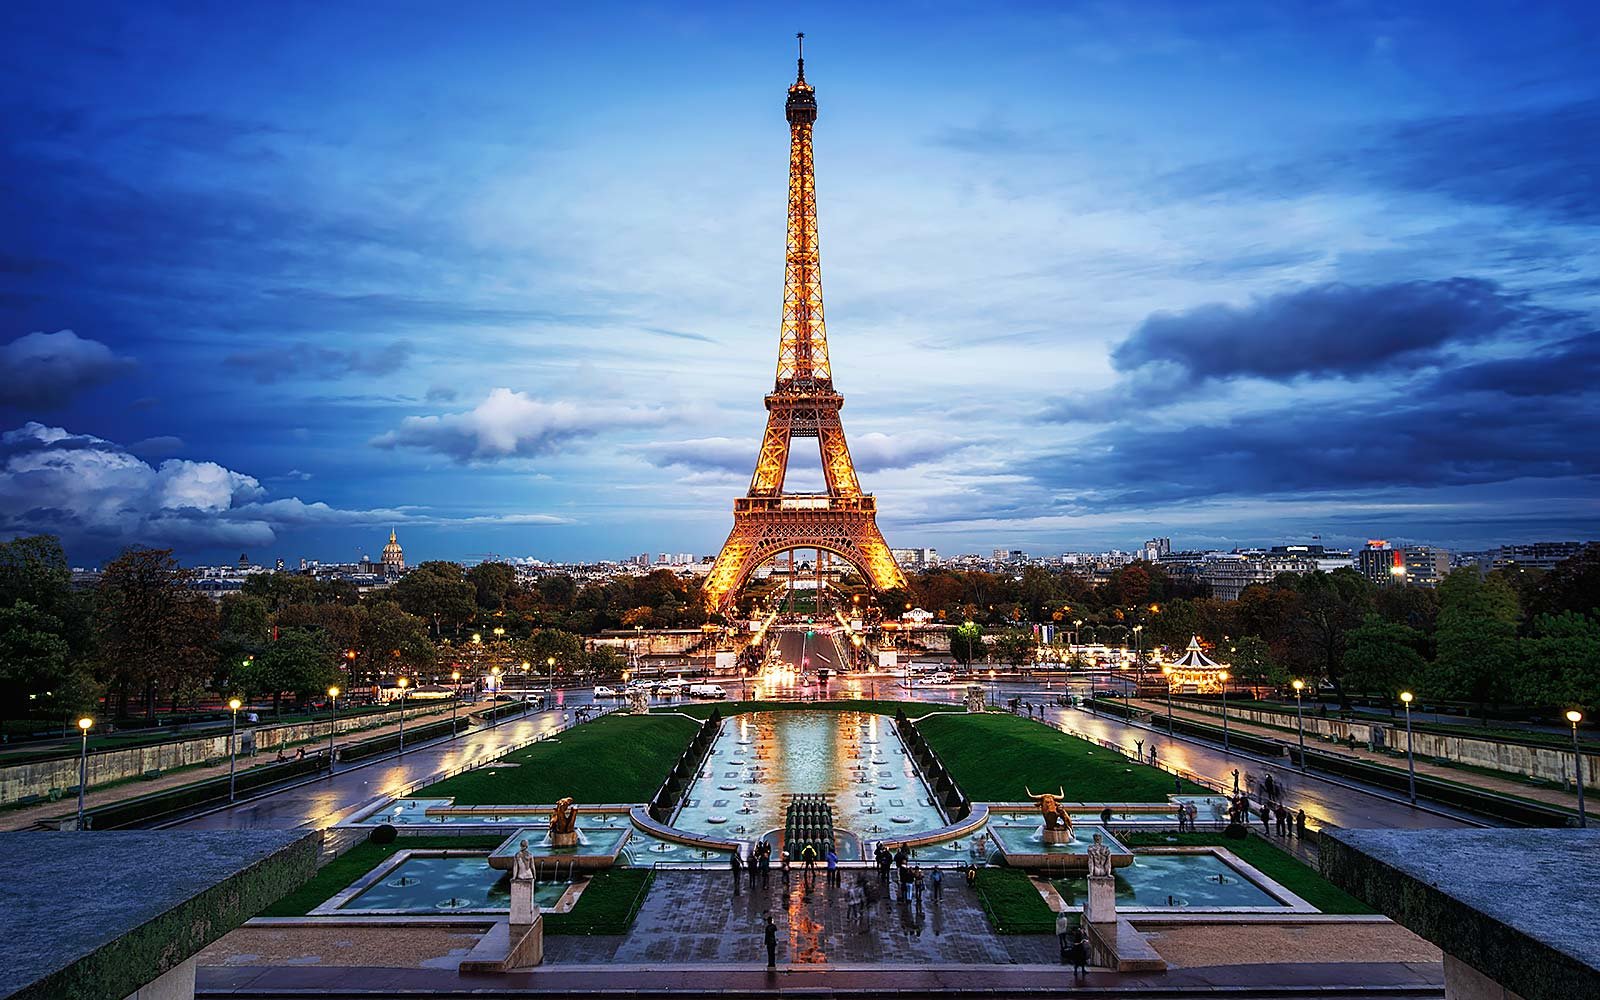 جاذبه های گردشگری پاریس - برج ایفل